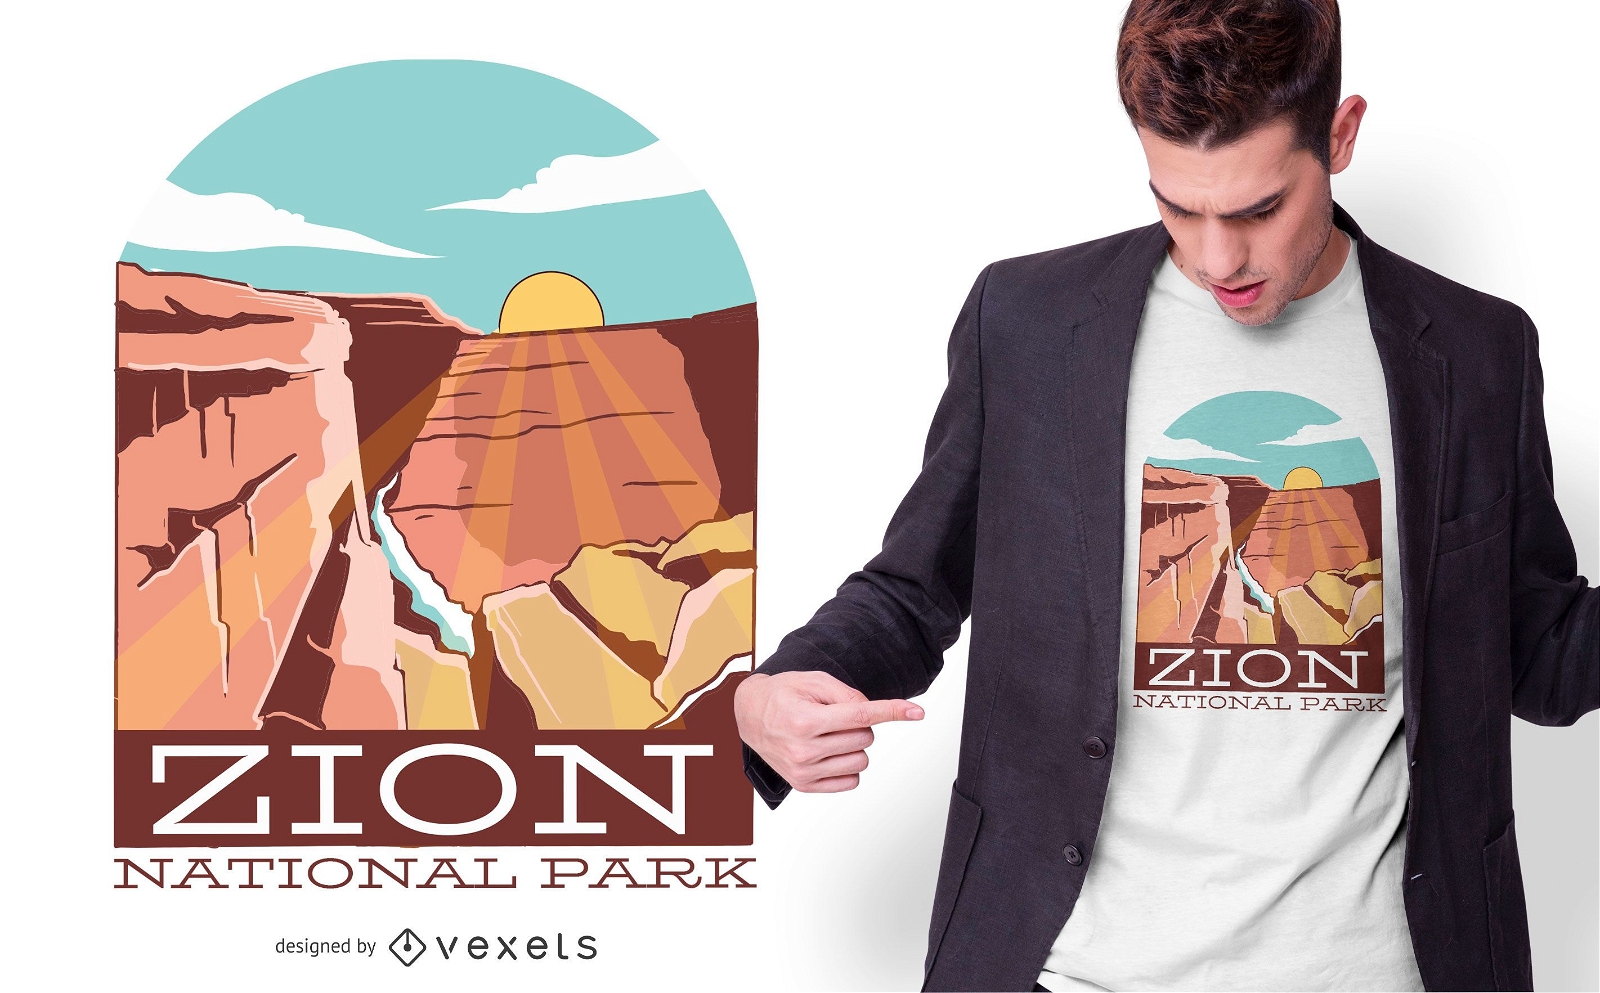 Dise?o de camiseta del Parque Nacional Zion